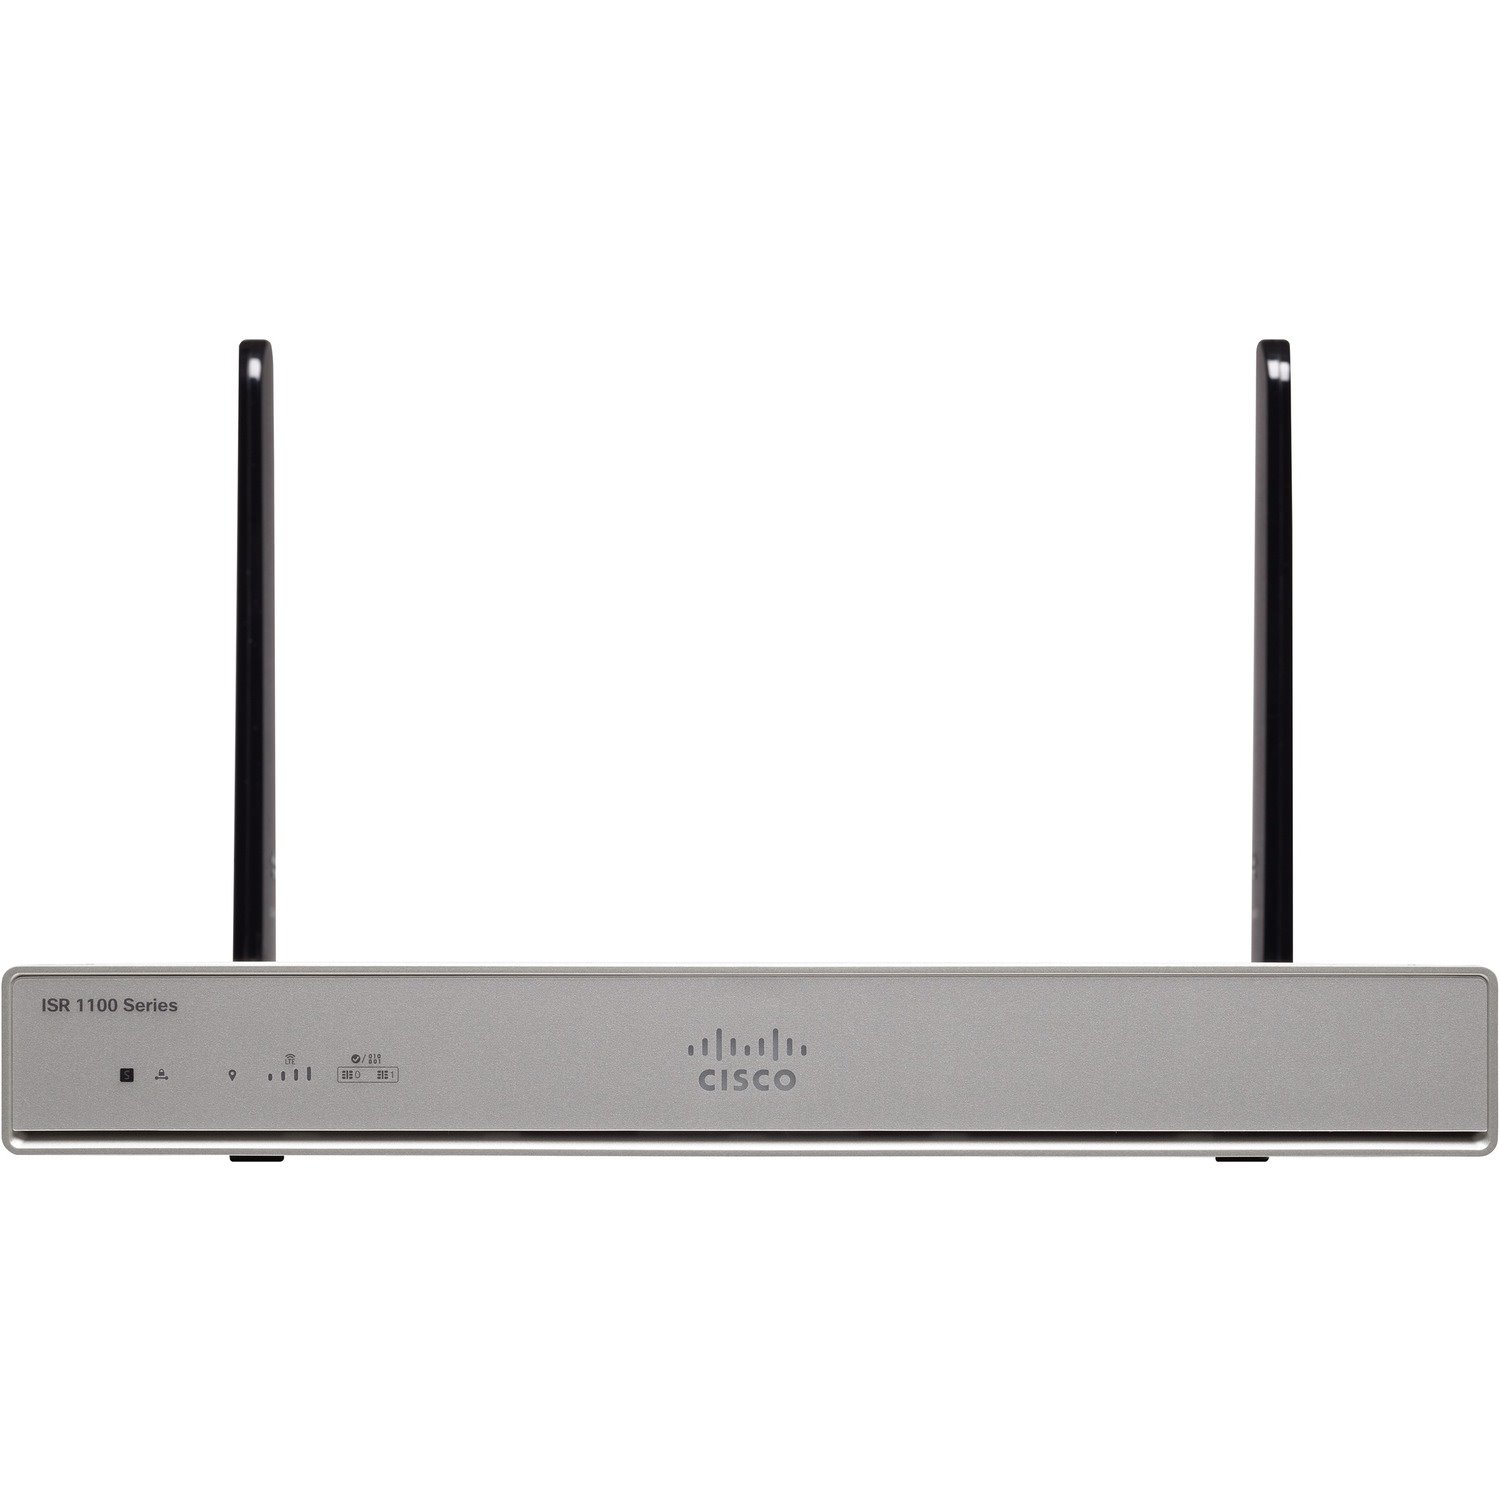 Cisco 1100 C1111-8P Router